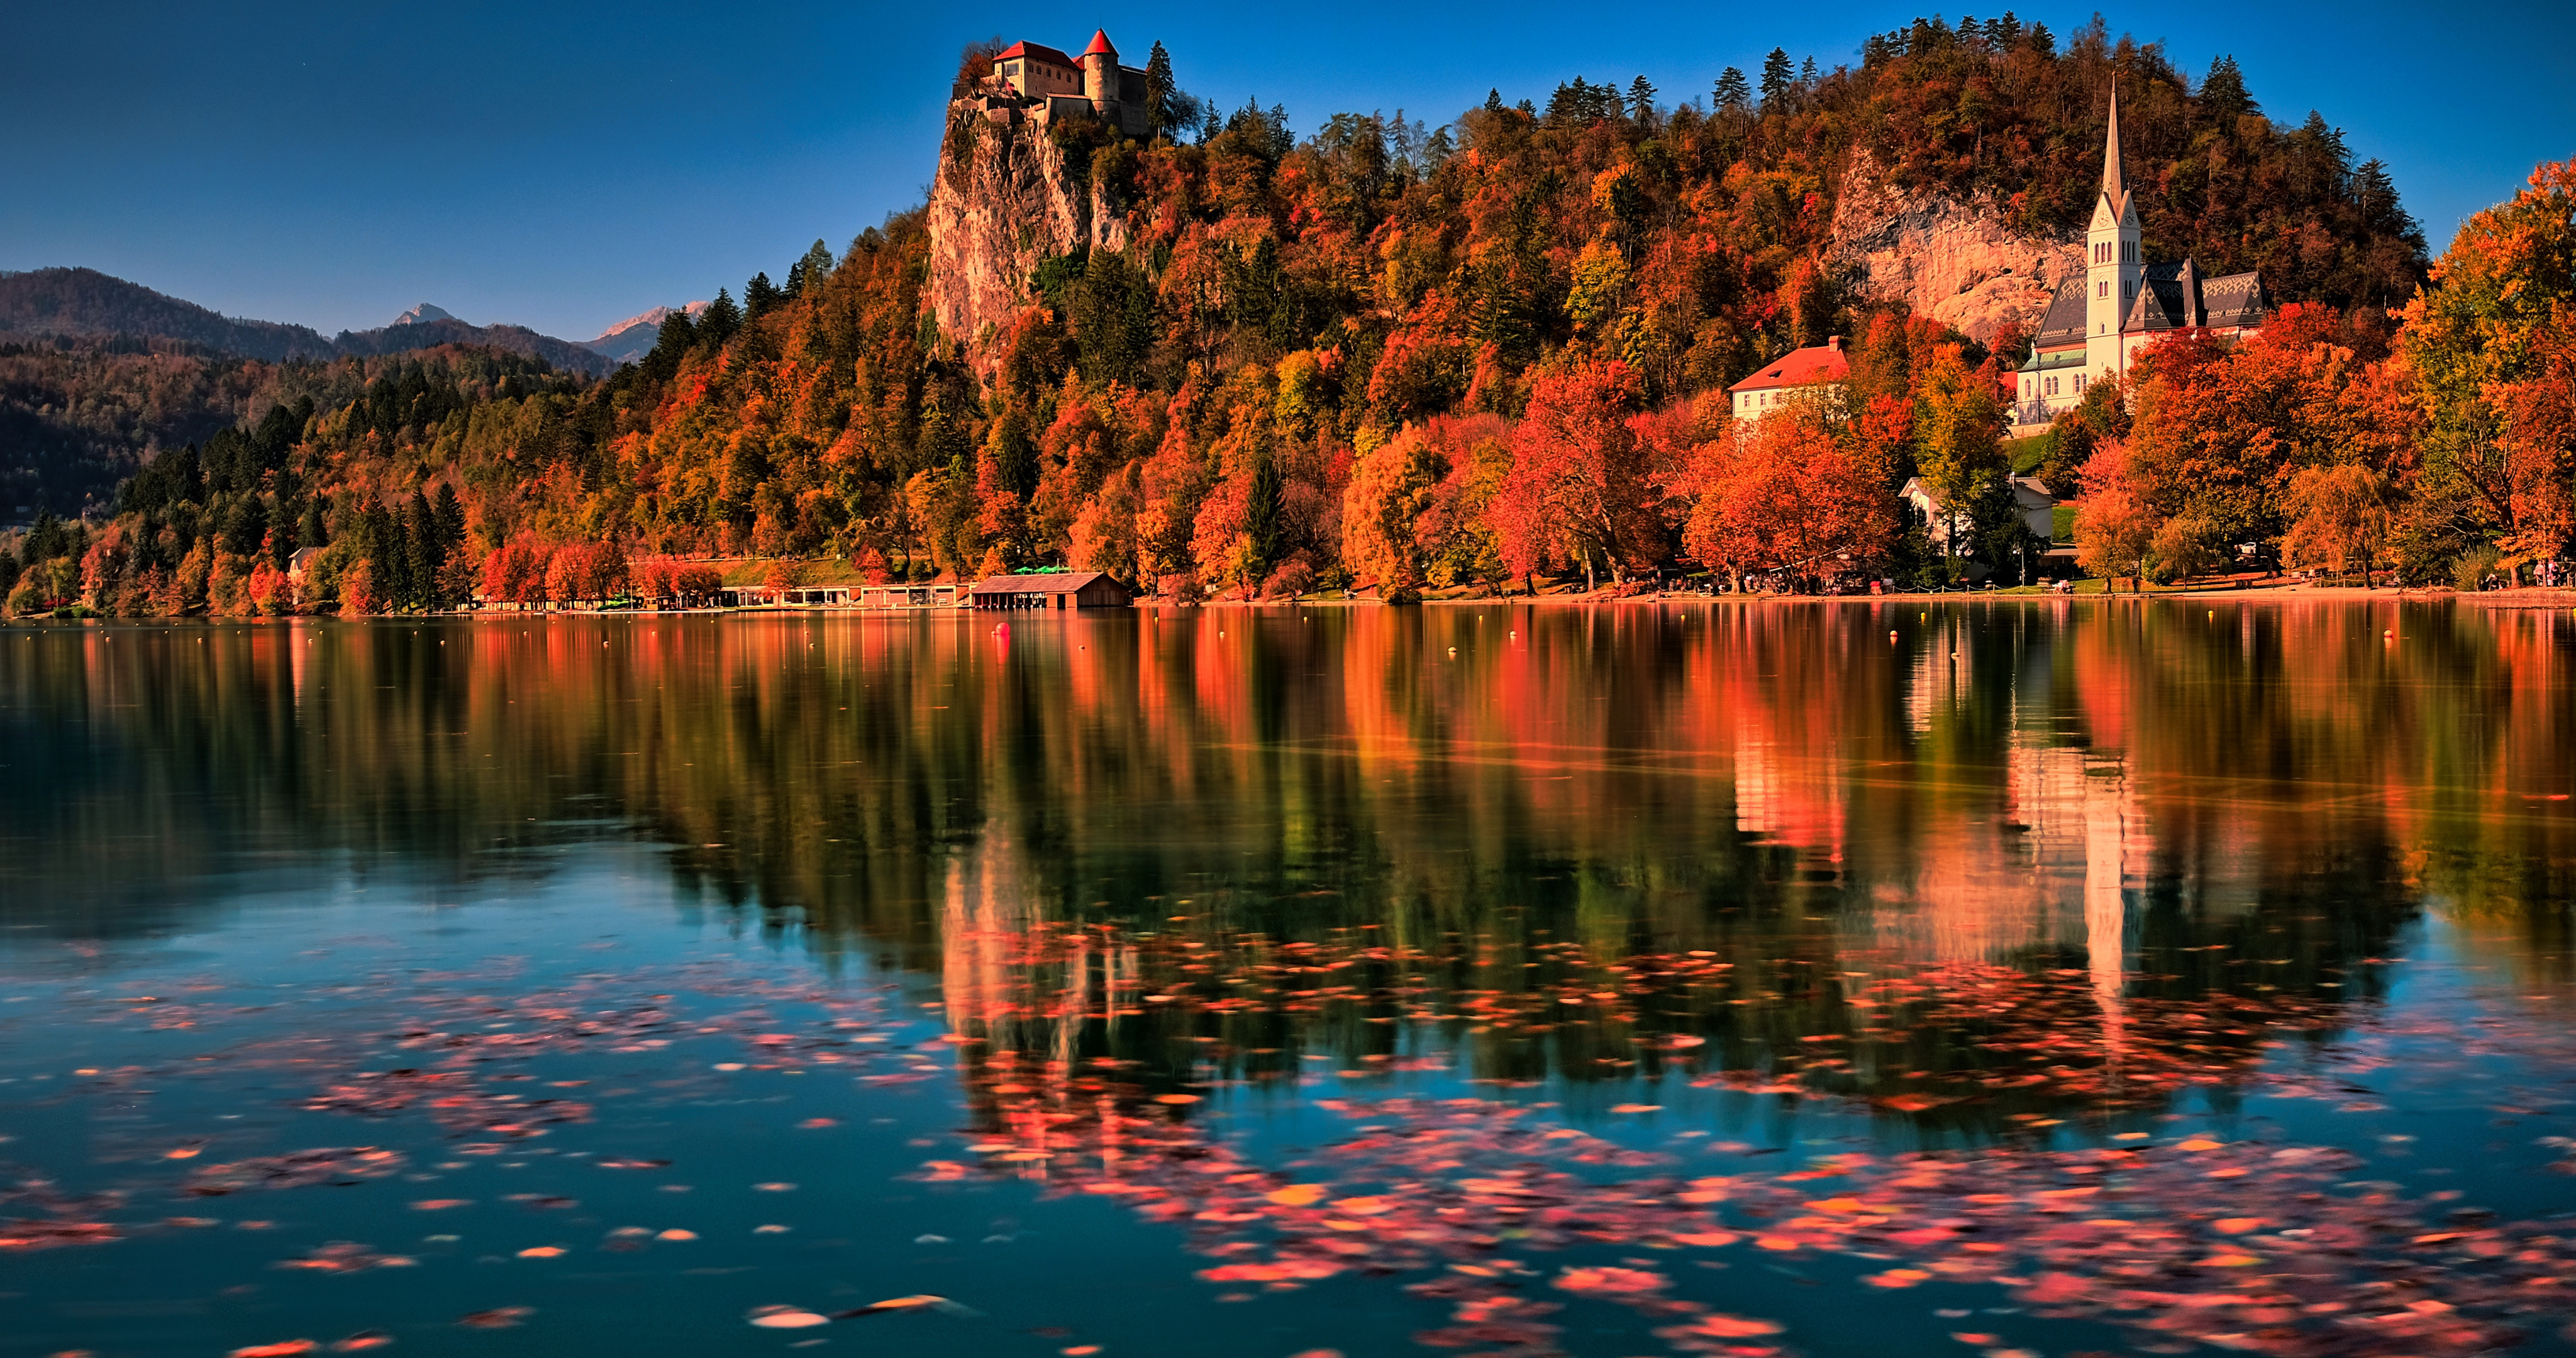 Обои на рабочий стол осень, пейзаж, Бледское озеро, скалы, Блед, листва, церковь, природа, леса, горы, озеро, Словения